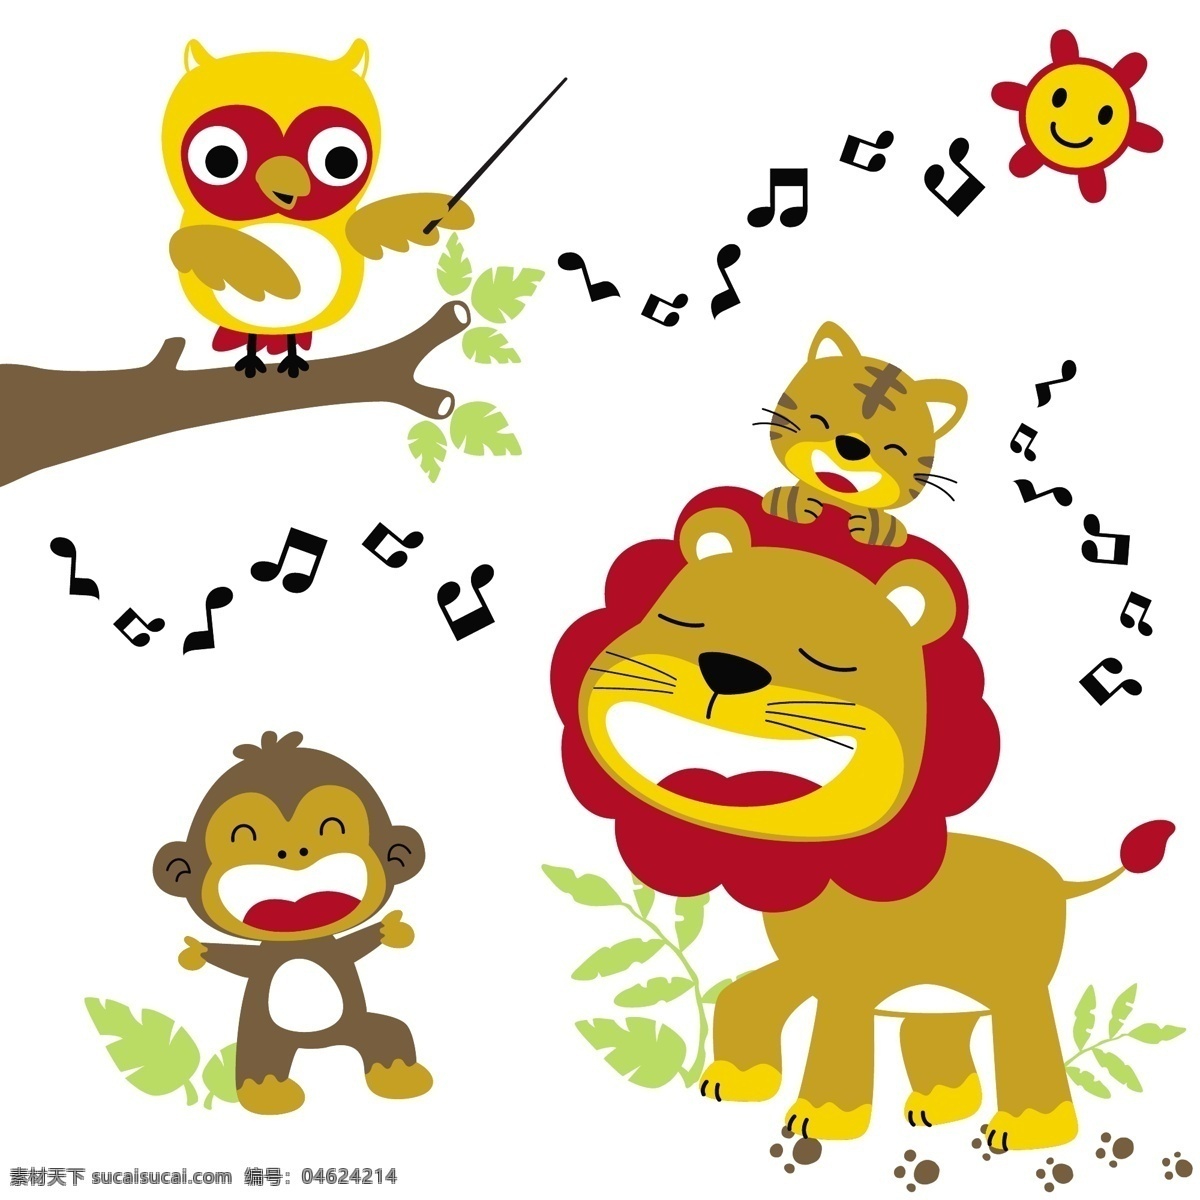 卡通 小 动物 唱歌 绘画 壁纸 图集 小动物 小狮子 小猴子 可爱卡通绘画 小动物唱歌